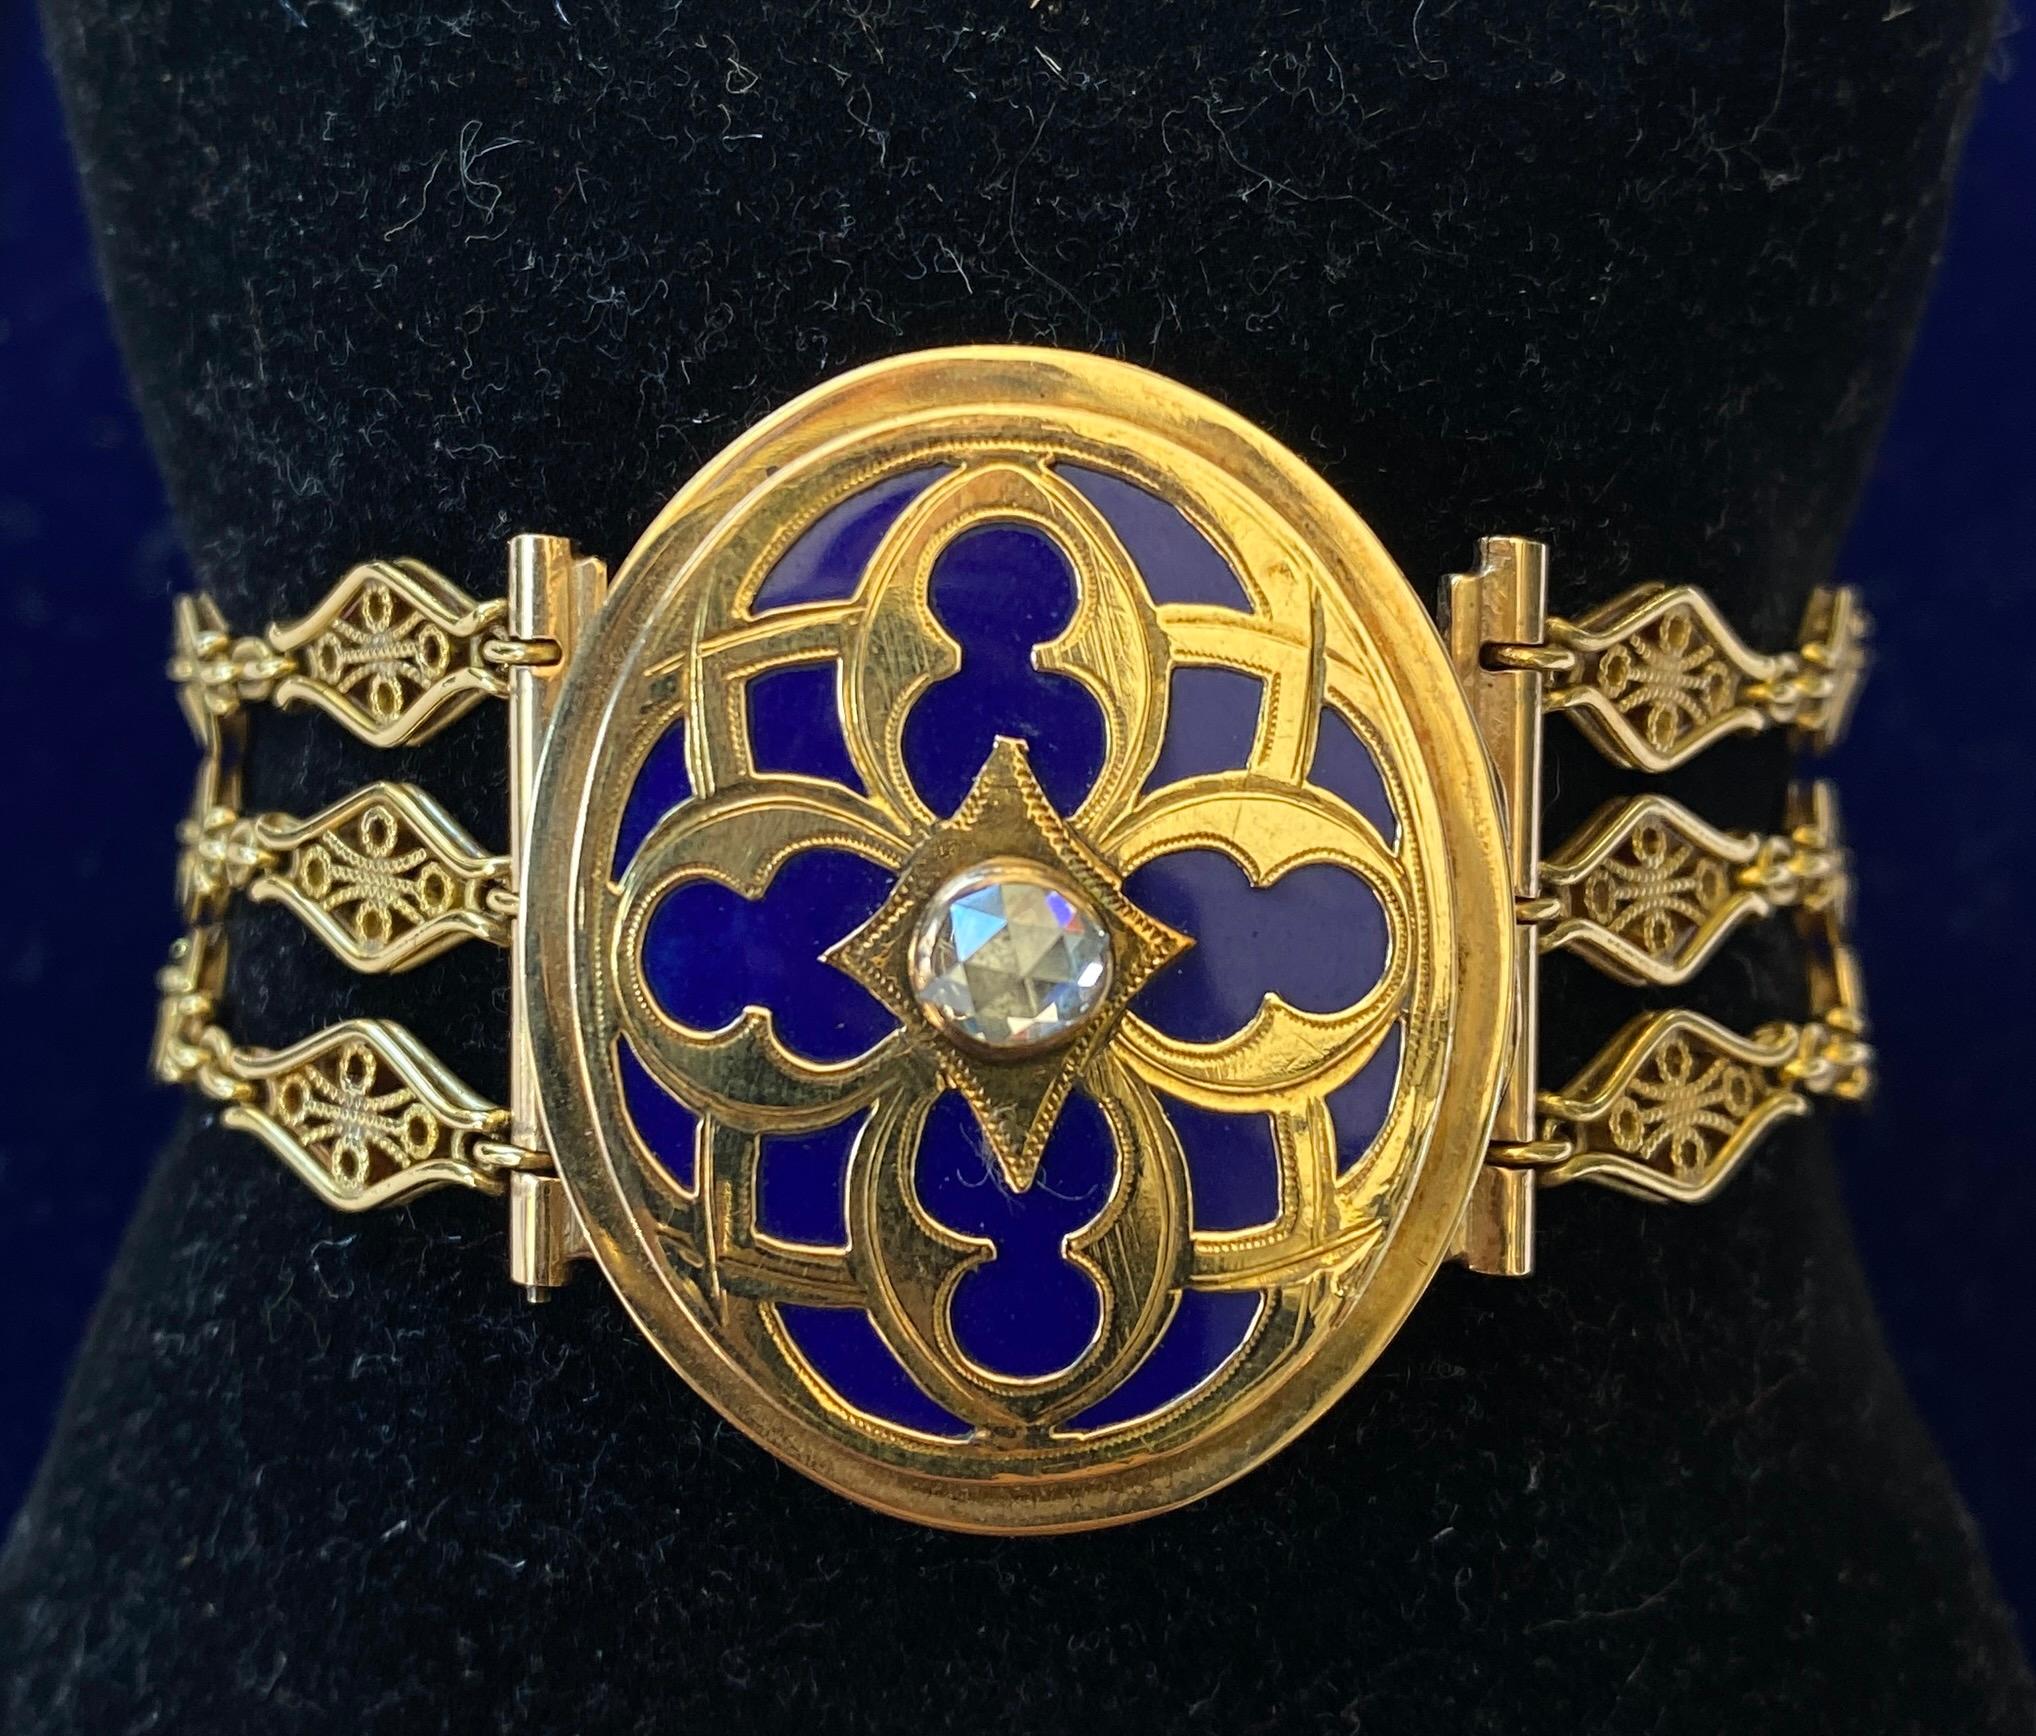 Eine atemberaubende antike viktorianische Medaillon Armband wurde fein in 14 Karat Gelbgold gefertigt.

Das Armband besteht aus drei dekorativen Gliederketten, die auf der Rückseite mit einem Druckverschluss und auf der Vorderseite mit einem großen